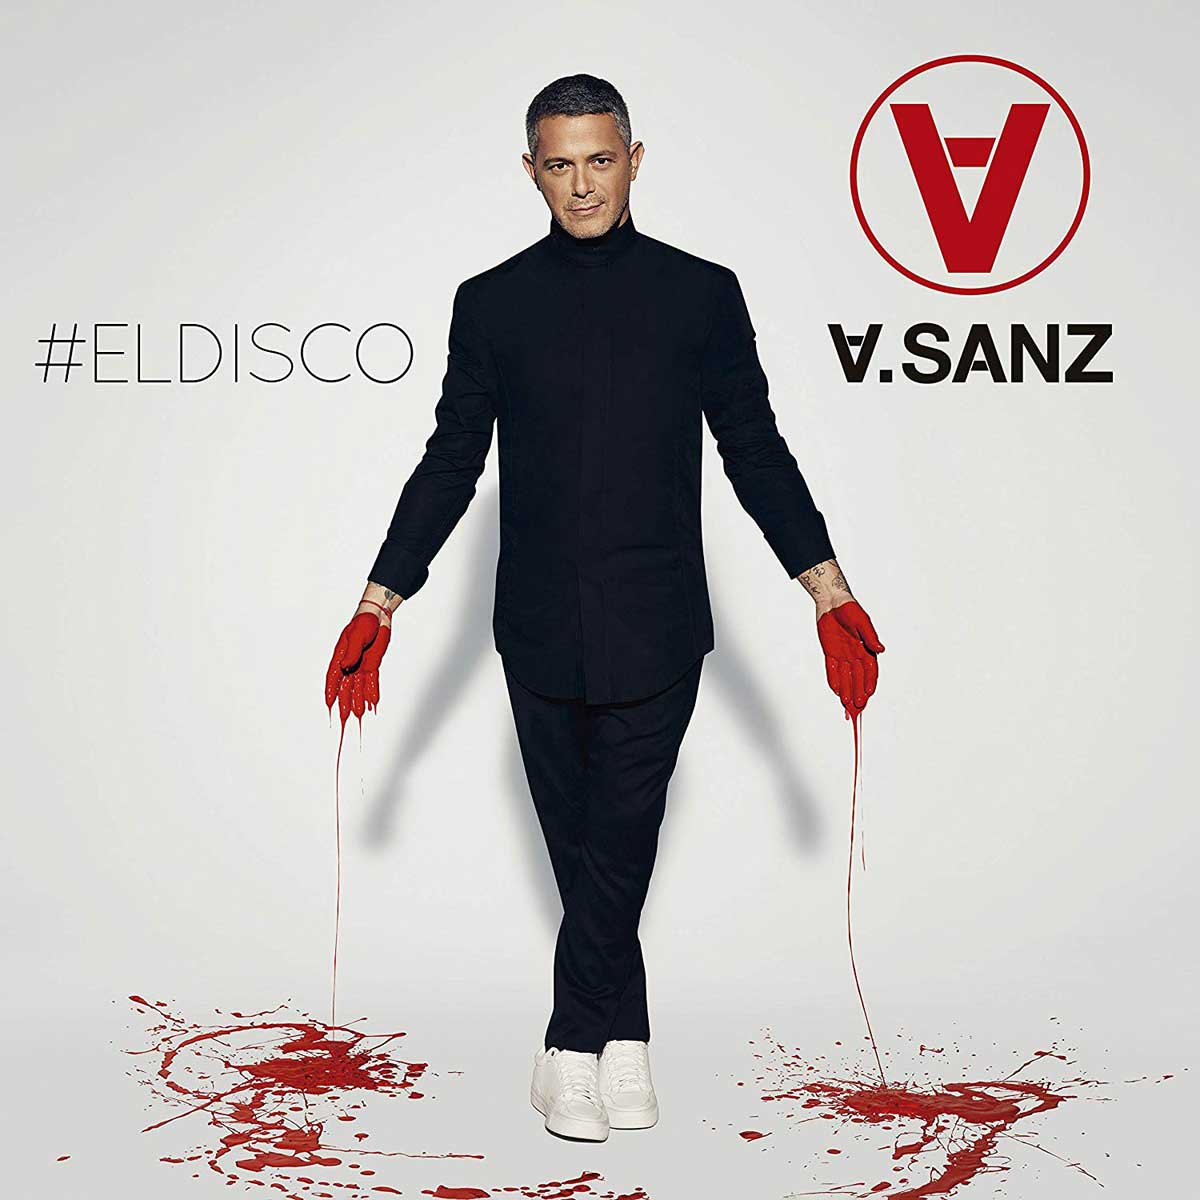 Alejandro Sanz: #Eldisco - portada